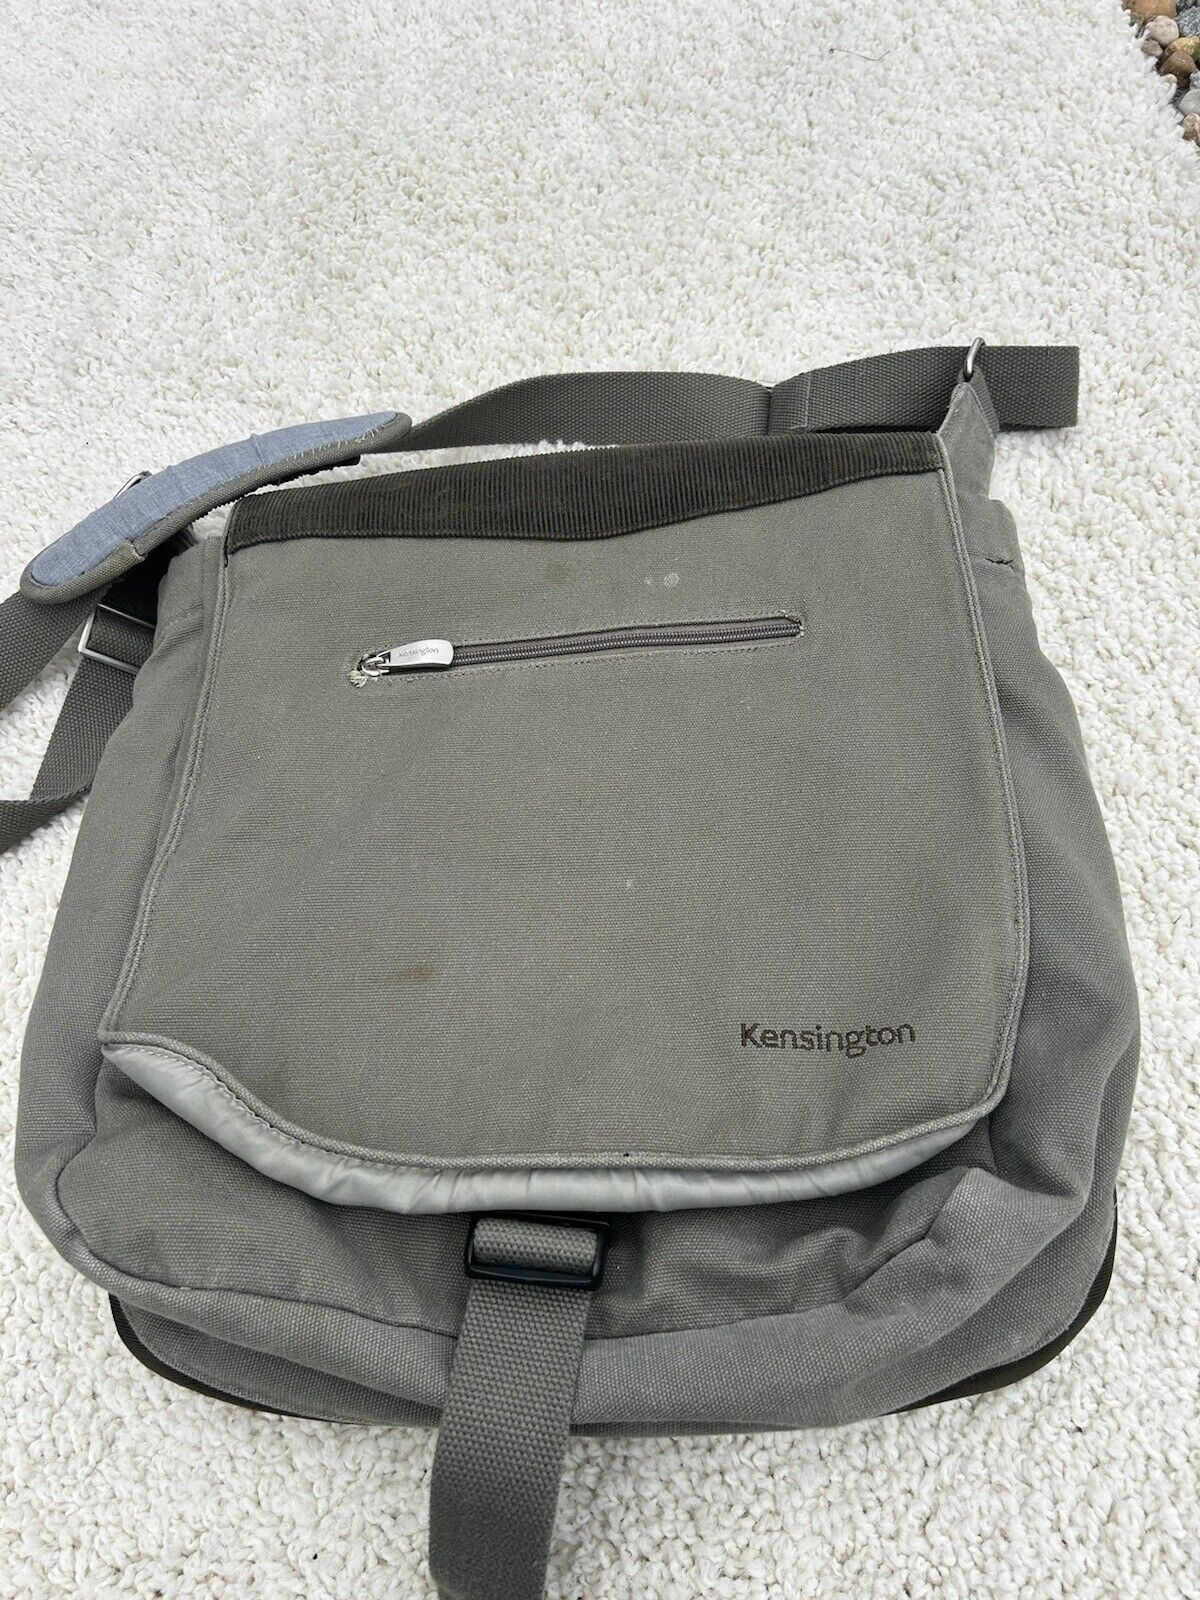 Kensington Saddlebag Laptop Carrying Case Black Backpack Shoulder Bag